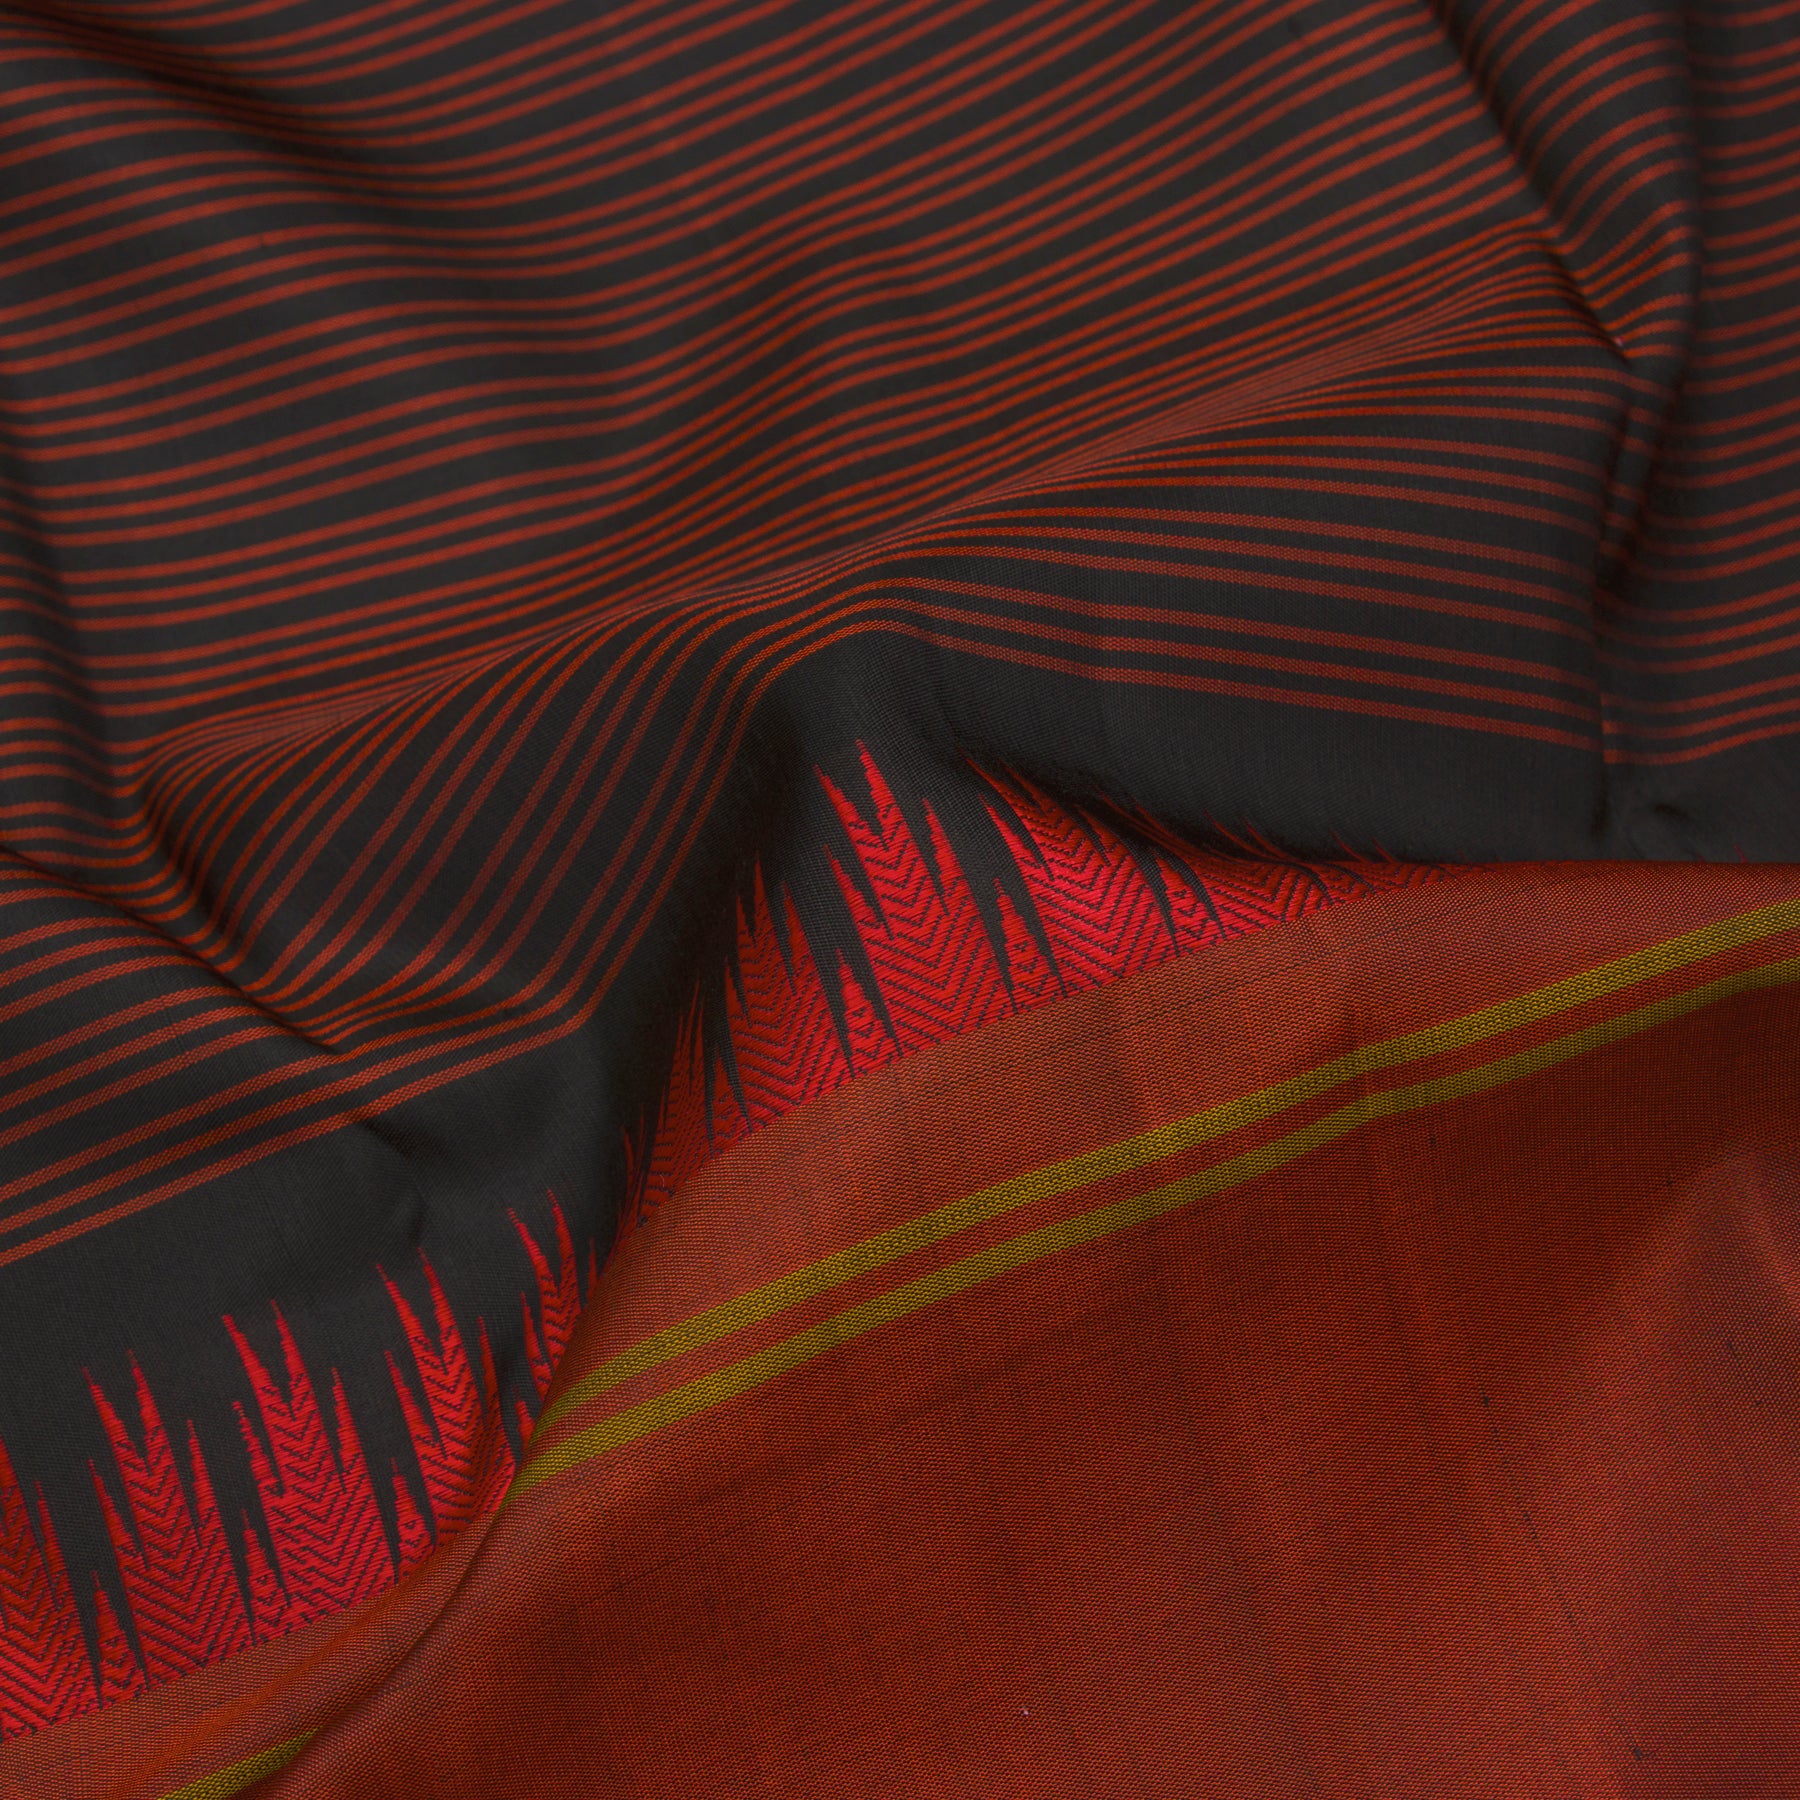 Kanakavalli Kanjivaram Silk Sari 22-598-HS001-03528 - Fabric View